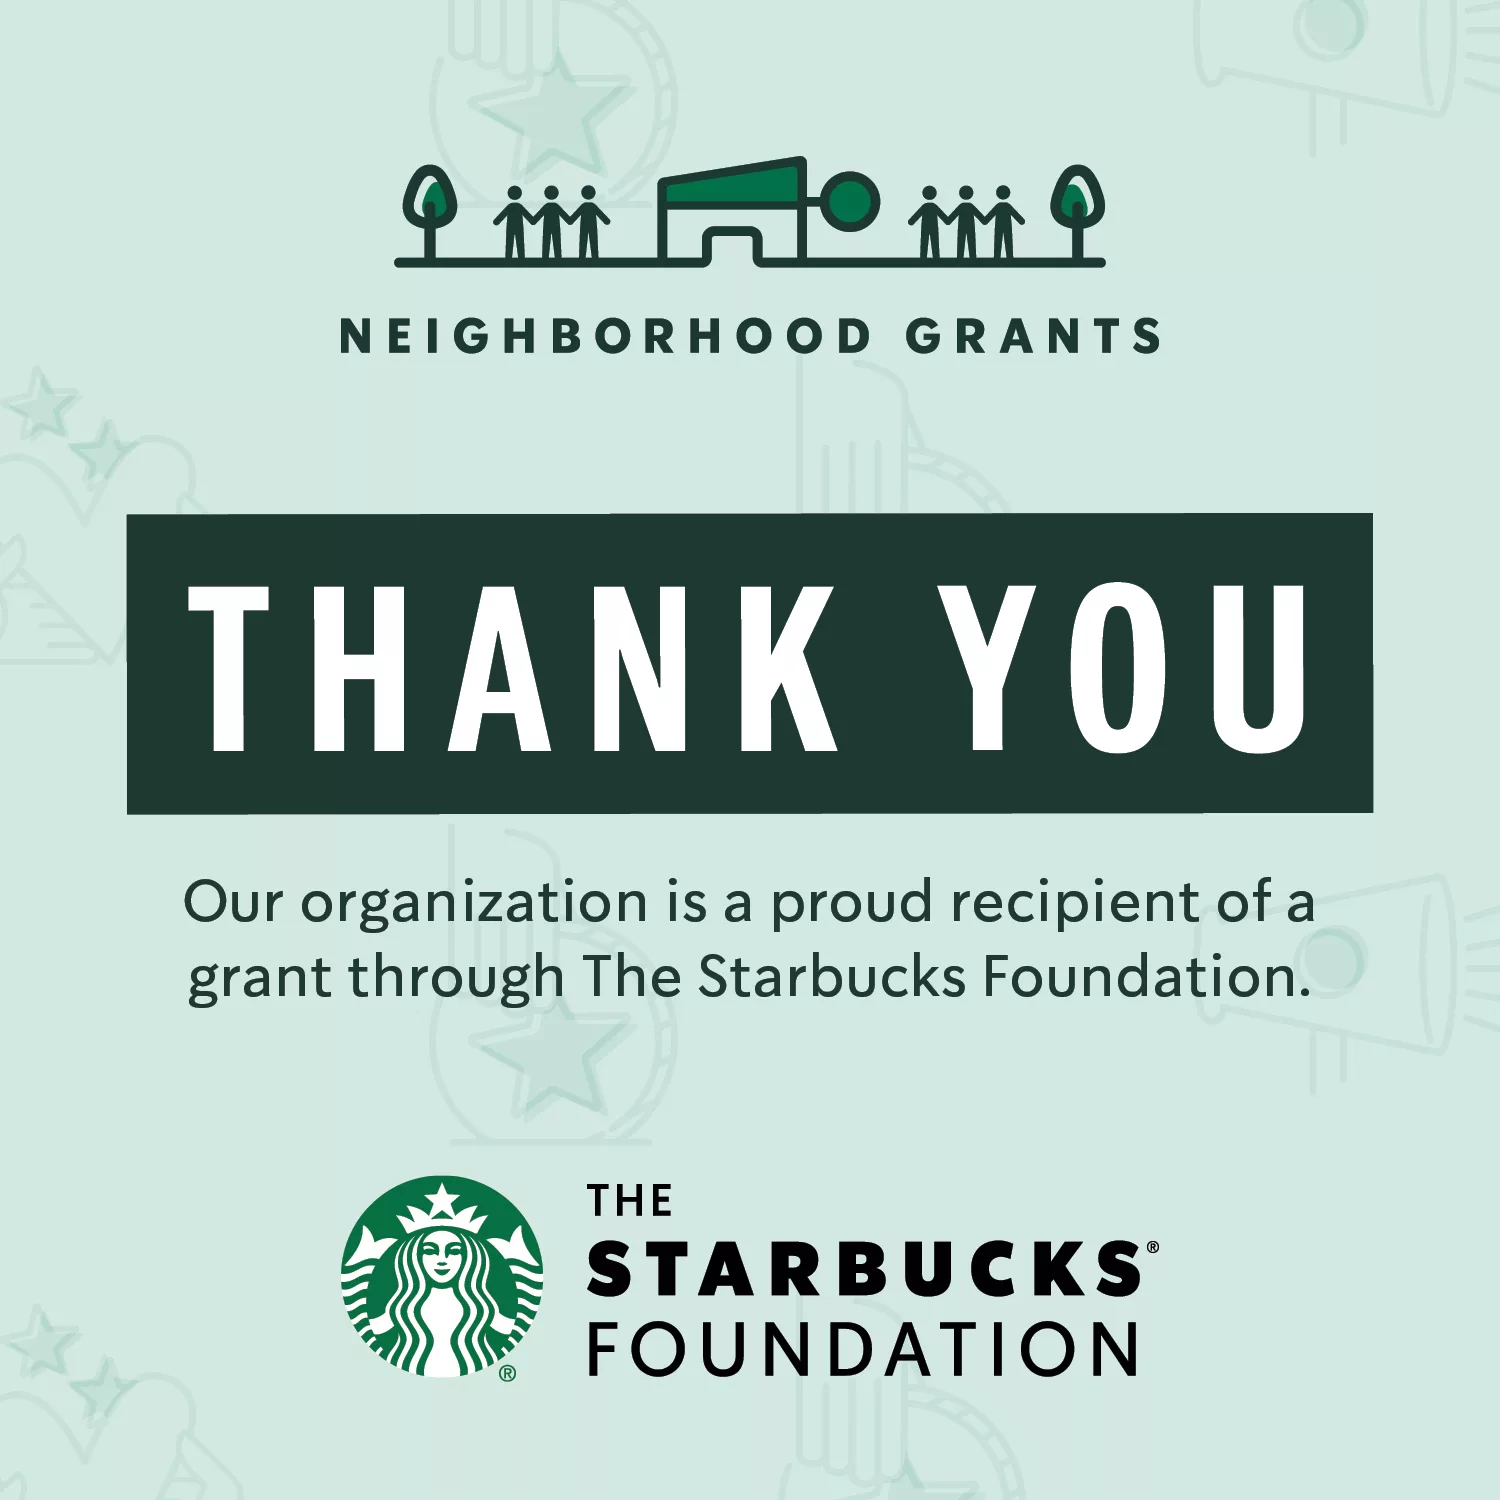 Emily’s Hope selected for The Starbucks Foundation Neighborhood Grant